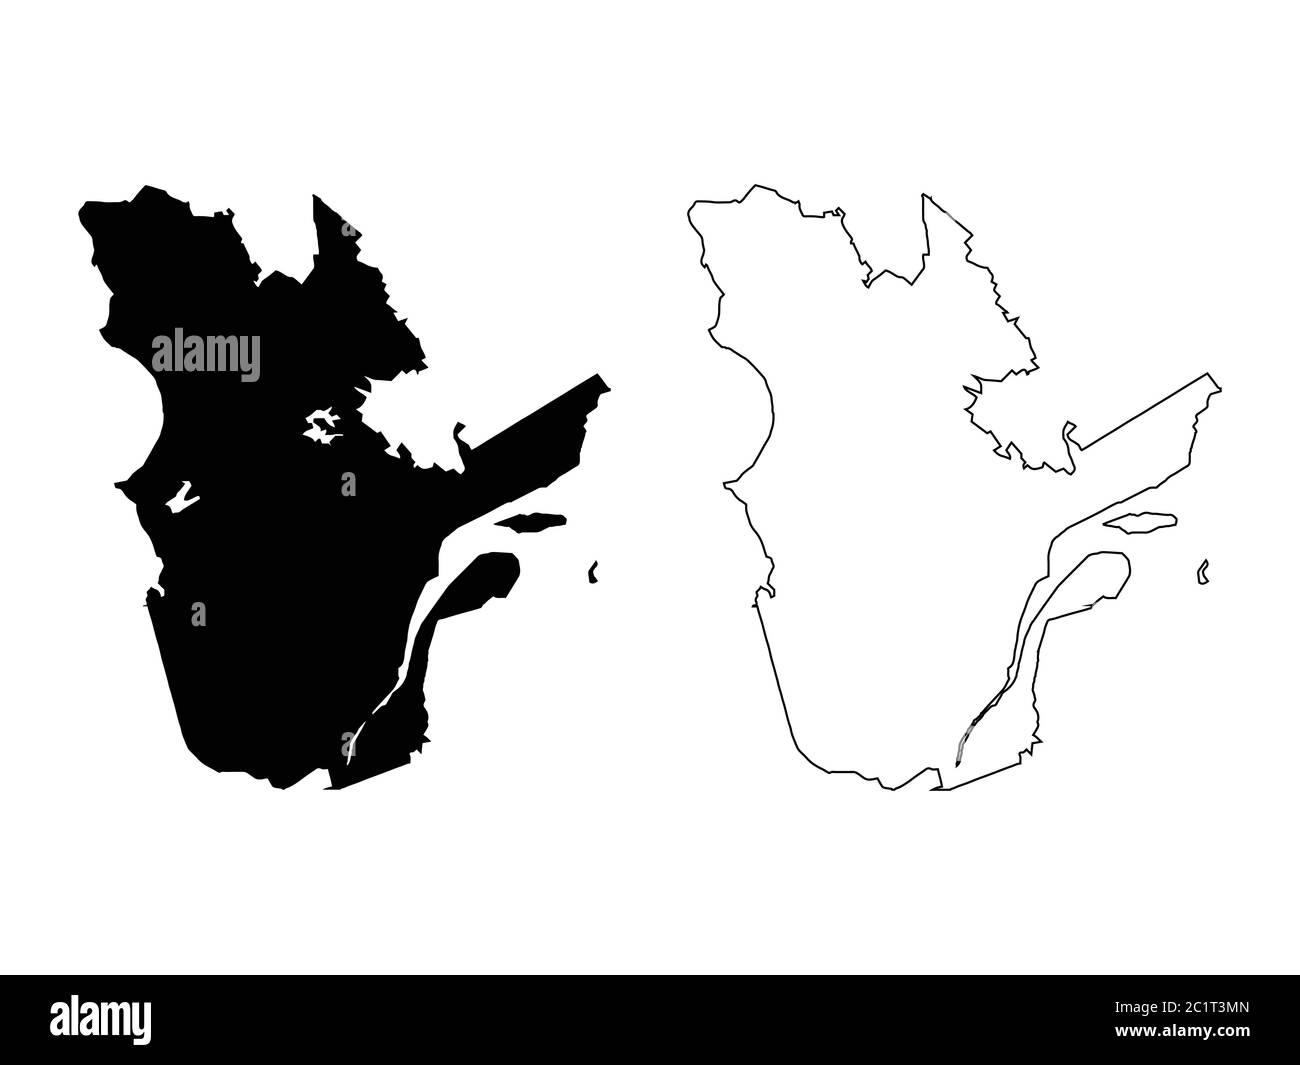 Provincia e territorio del Canada del Quebec. Illustrazione e contorno neri. Isolato su sfondo bianco. Vettore EPS Illustrazione Vettoriale